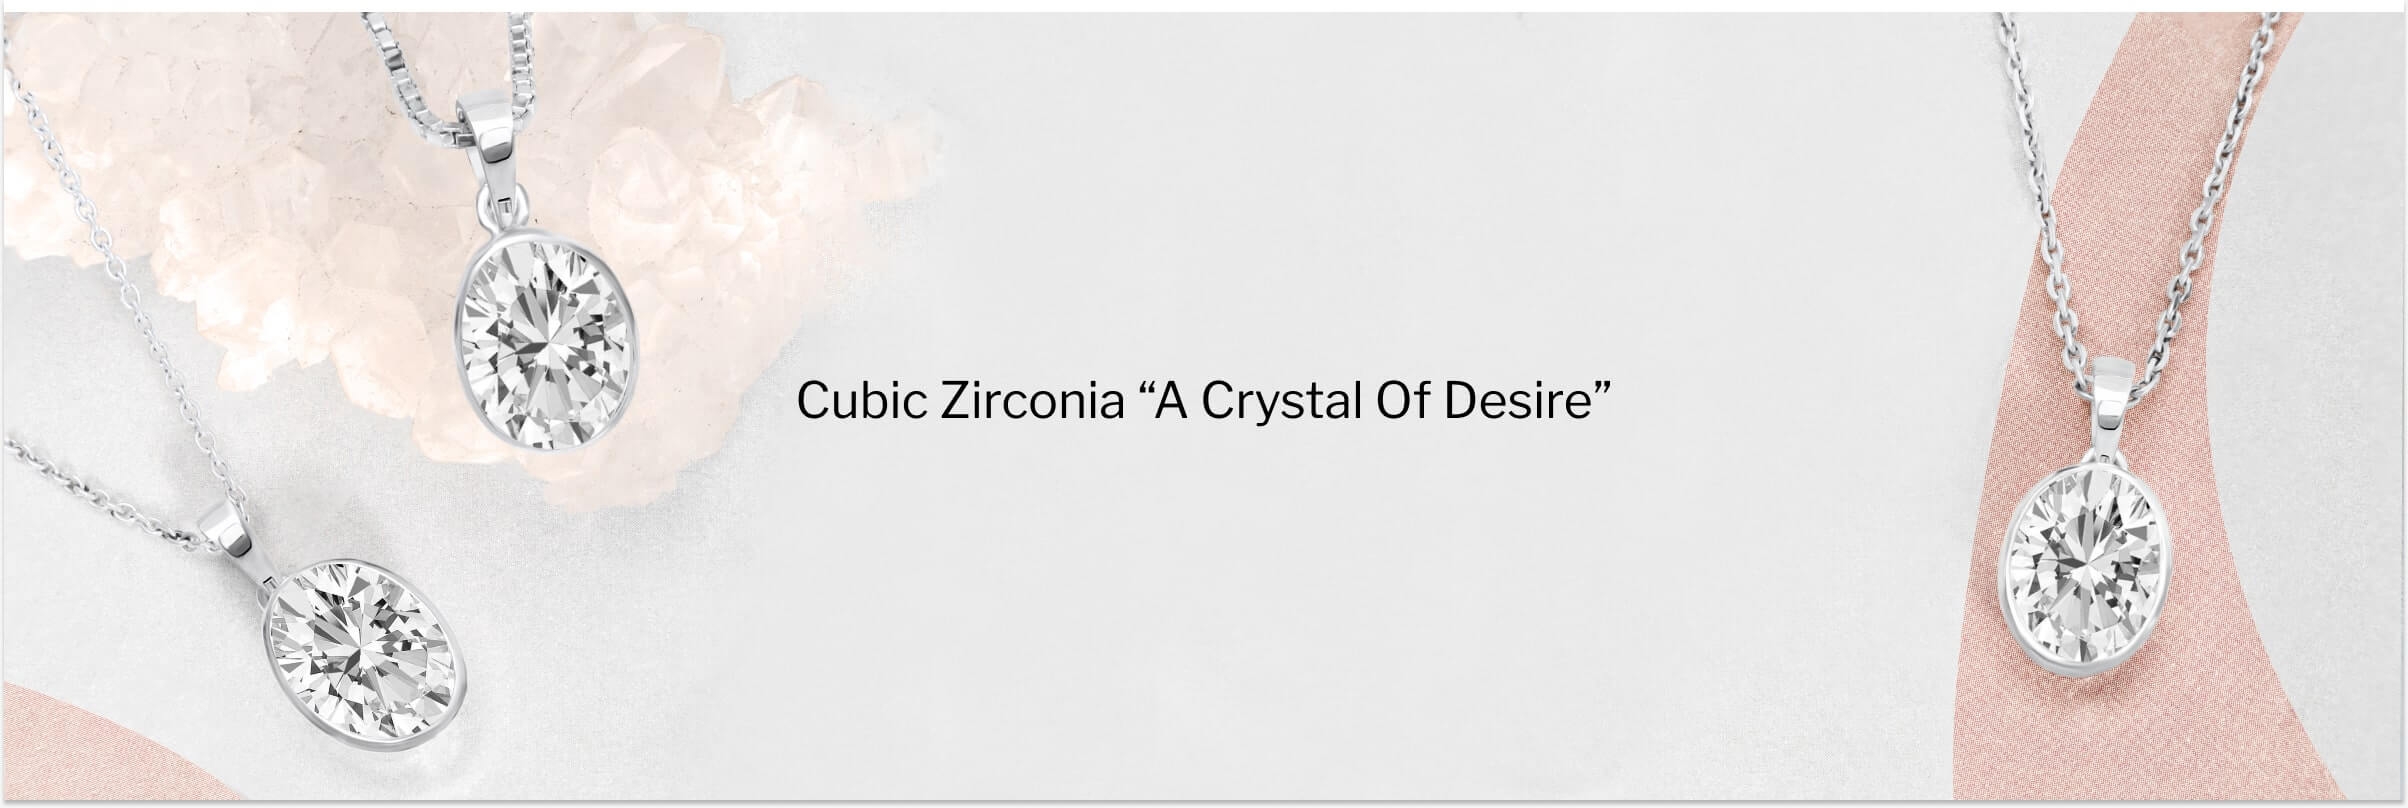 Cubic Zirconia Metaphysical properties